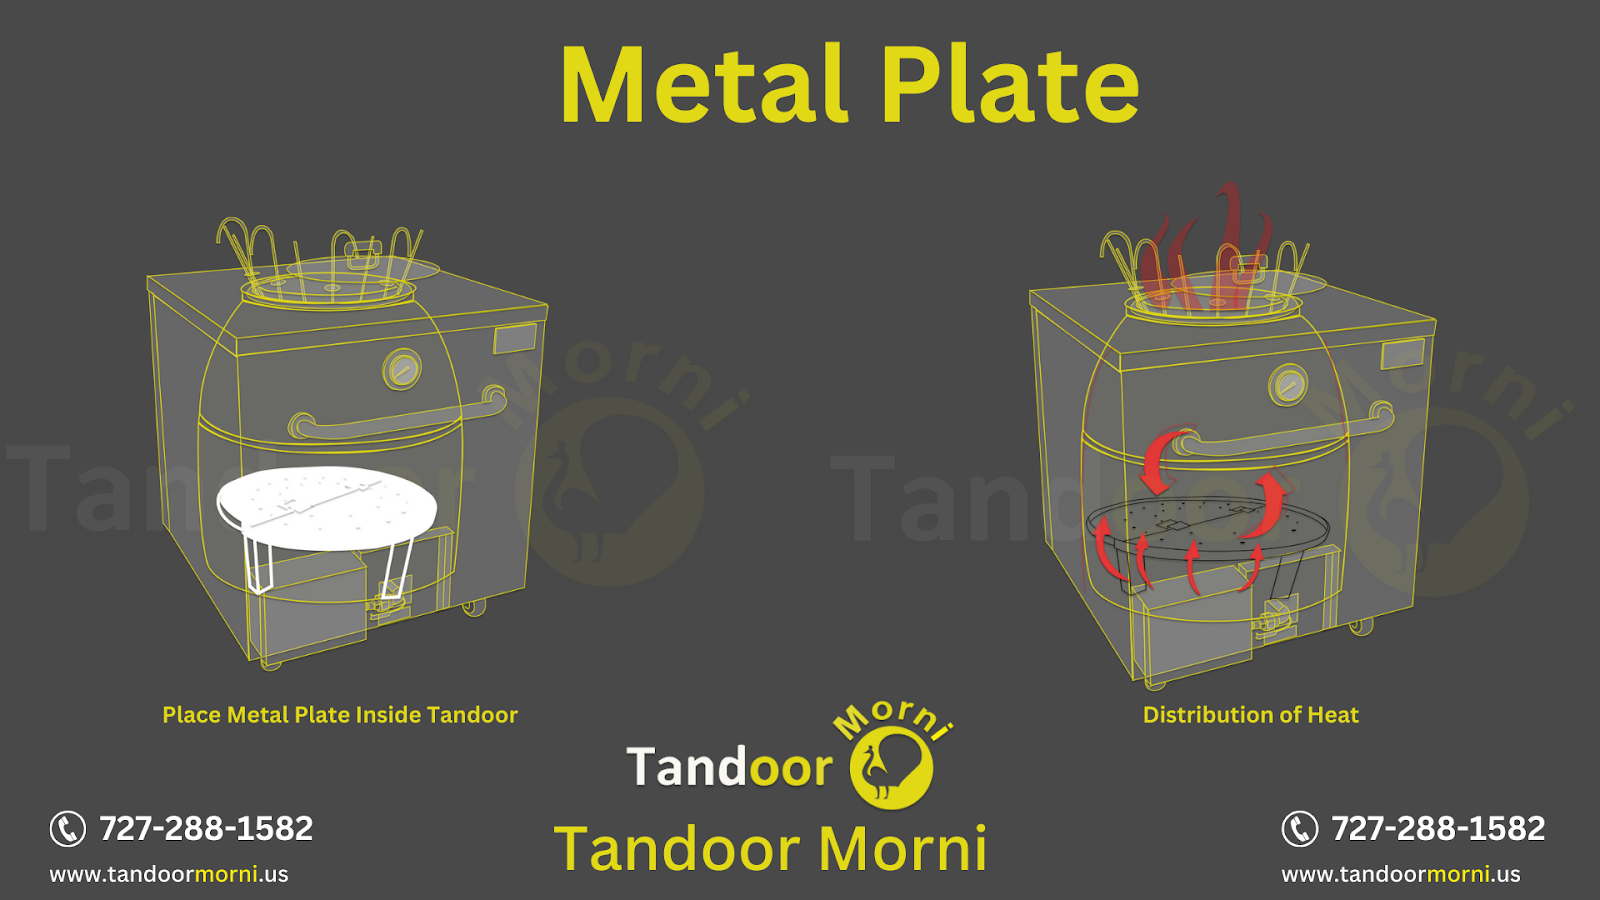 Metal Plate inside Tandoor Oven